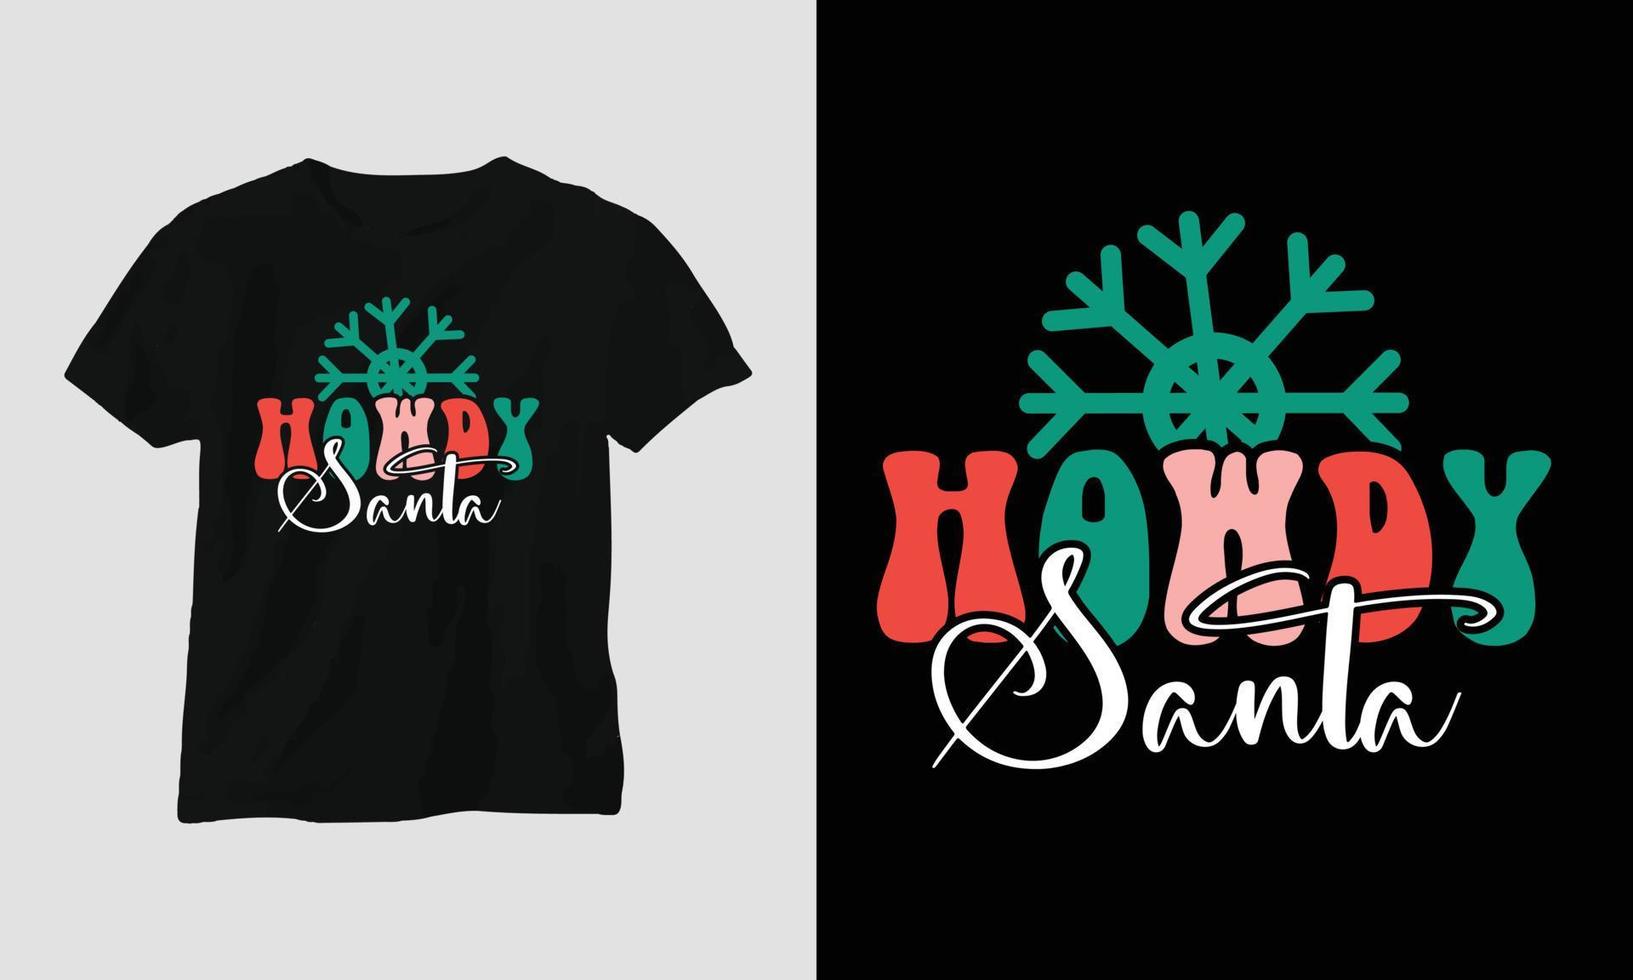 hallo santa - weihnachtliches retro grooviges t-shirt und kleiderdesign. vektor